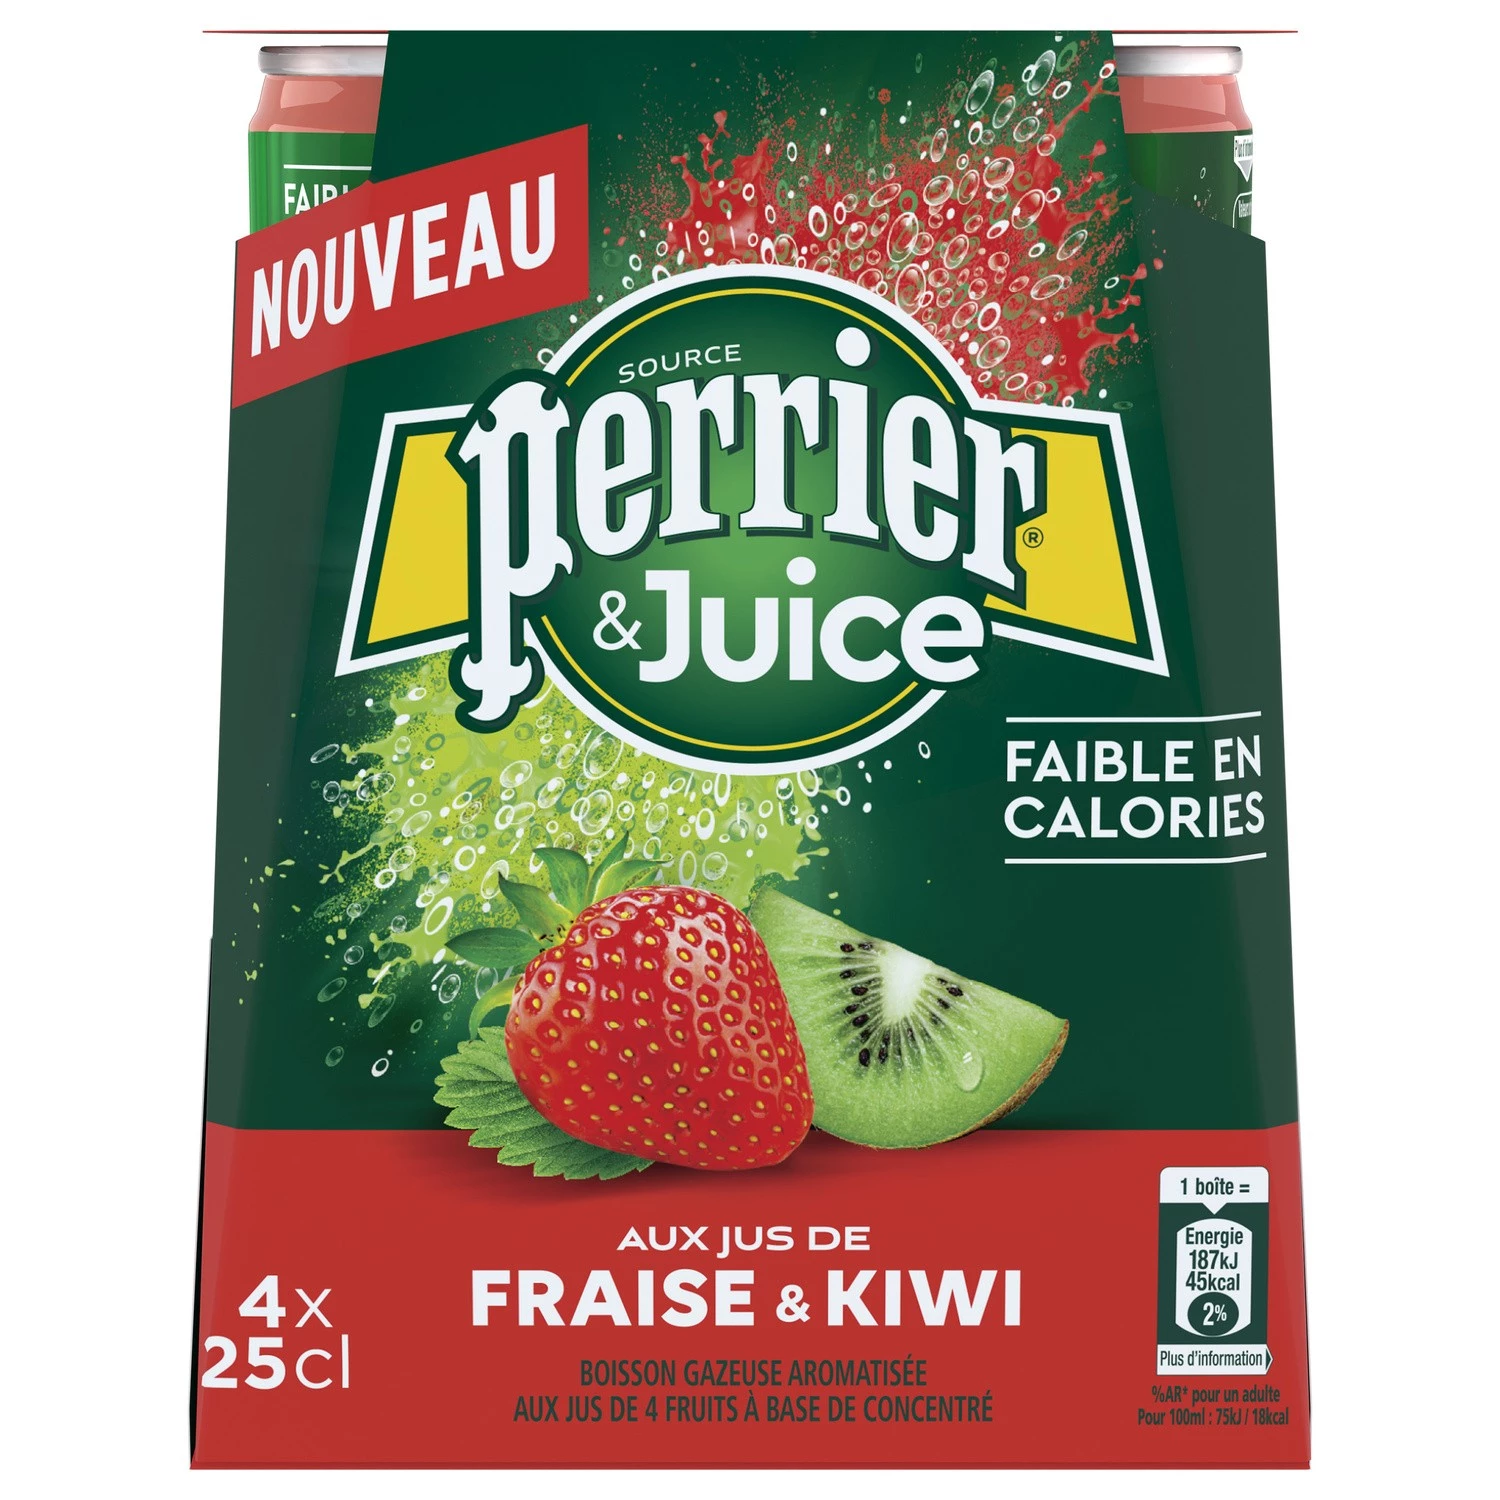 Mineralwasser mit Erdbeer-Kiwi-Geschmack 4x25cl - PERRIER & JUICY